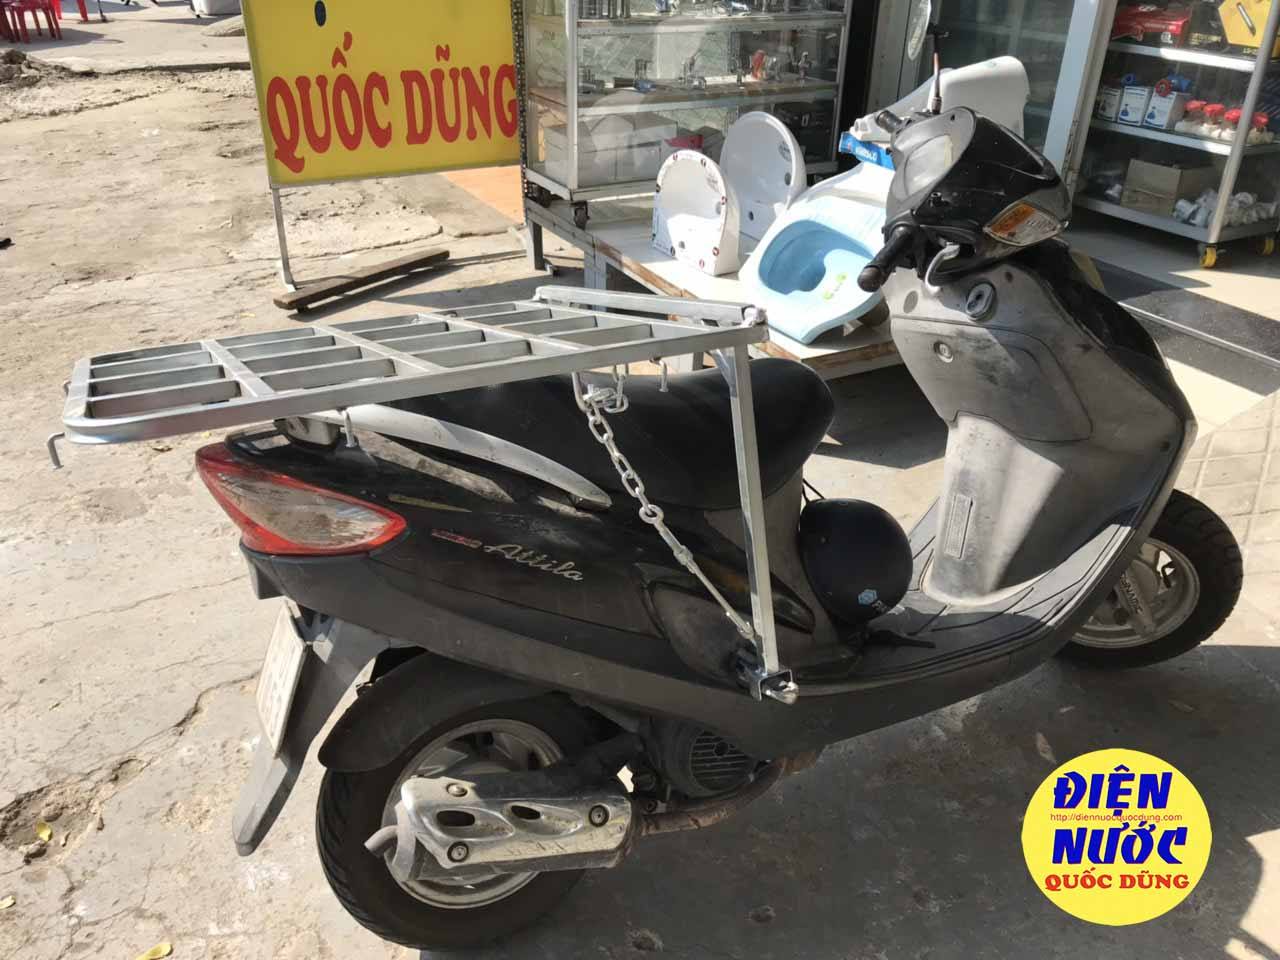 Mua bán xe SYM Attila Hà Nội giá rẻ uy tín 052023